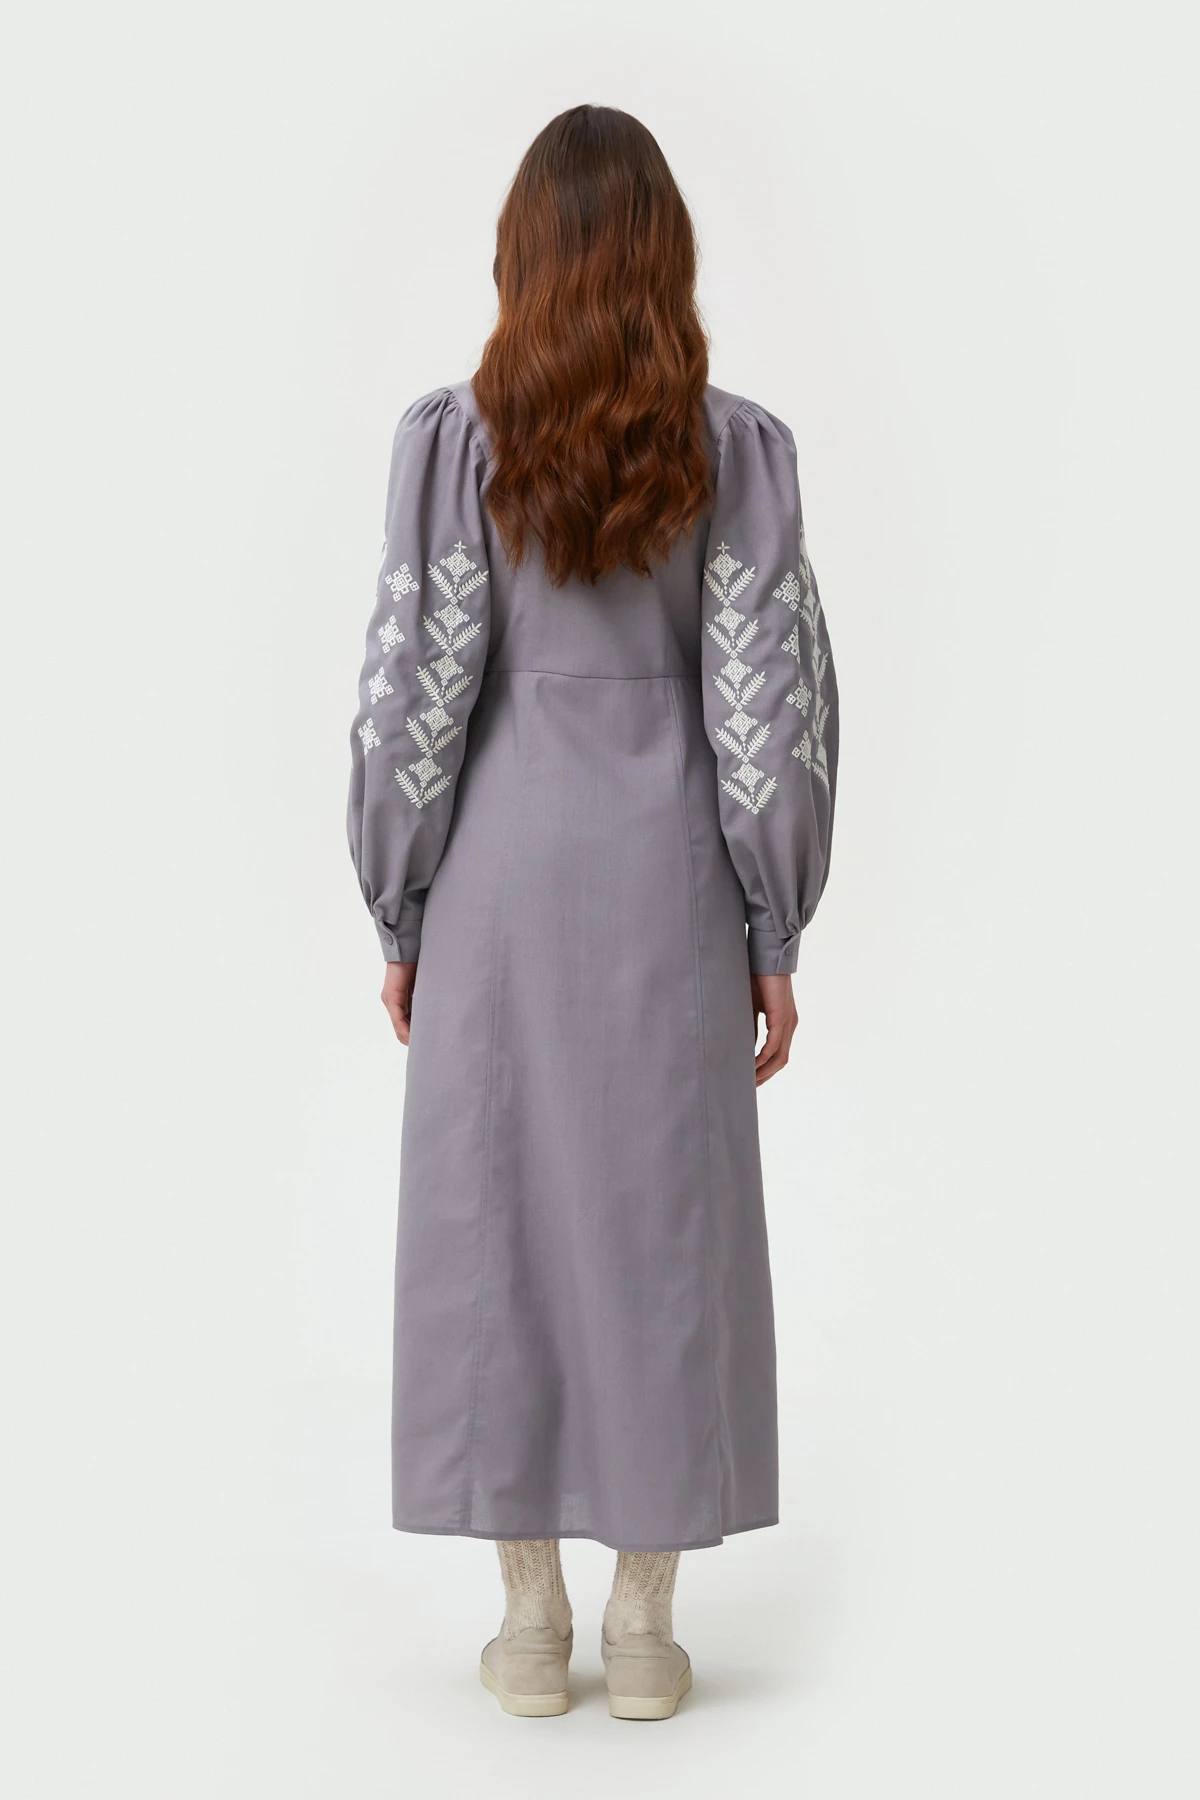 Сіра вишита сукня в орнамент ромби з льоном, фото 6